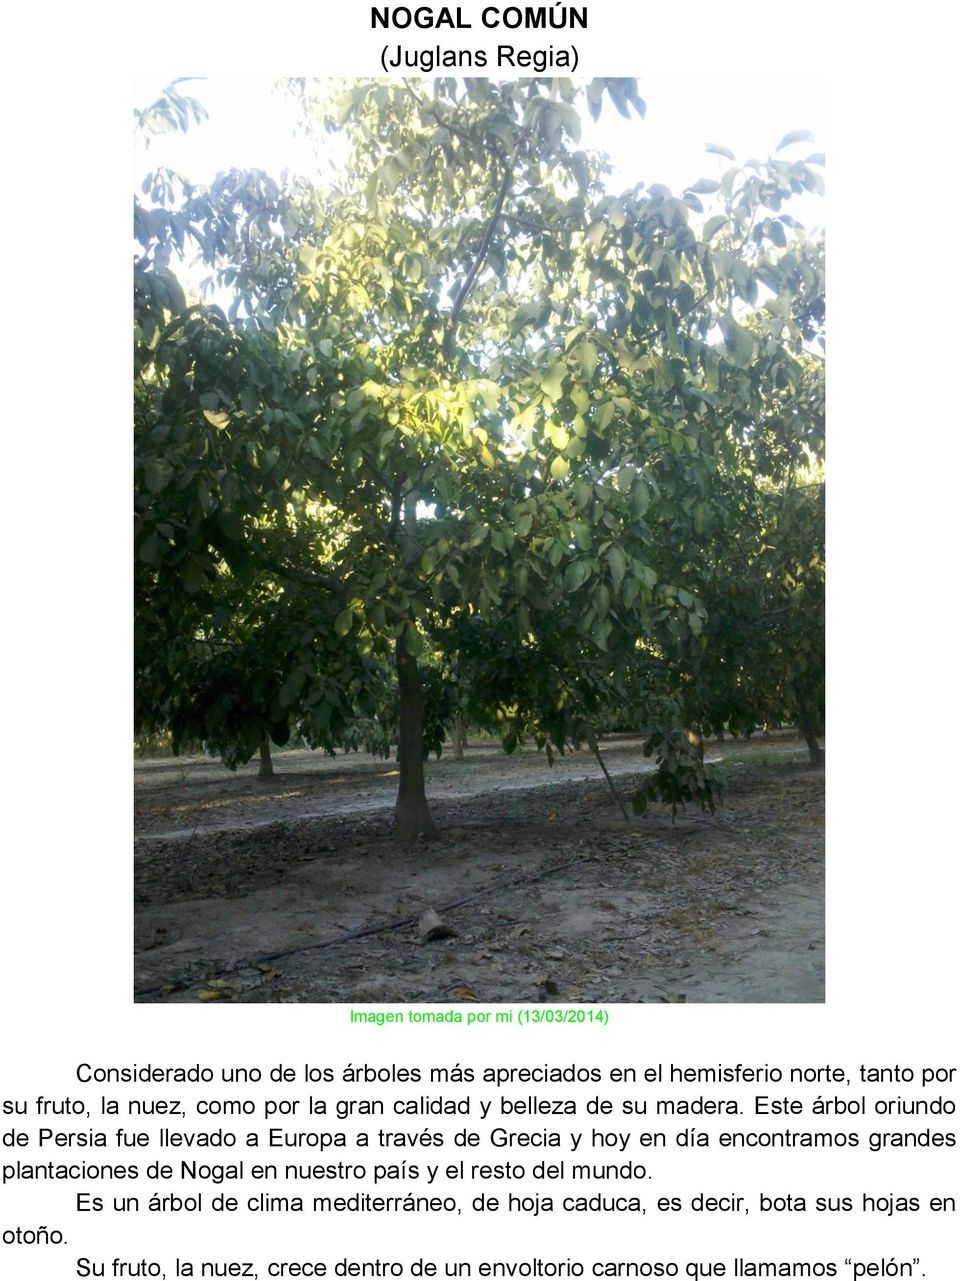 Este árbol oriundo de Persia fue llevado a Europa a través de Grecia y hoy en día encontramos grandes plantaciones de Nogal en